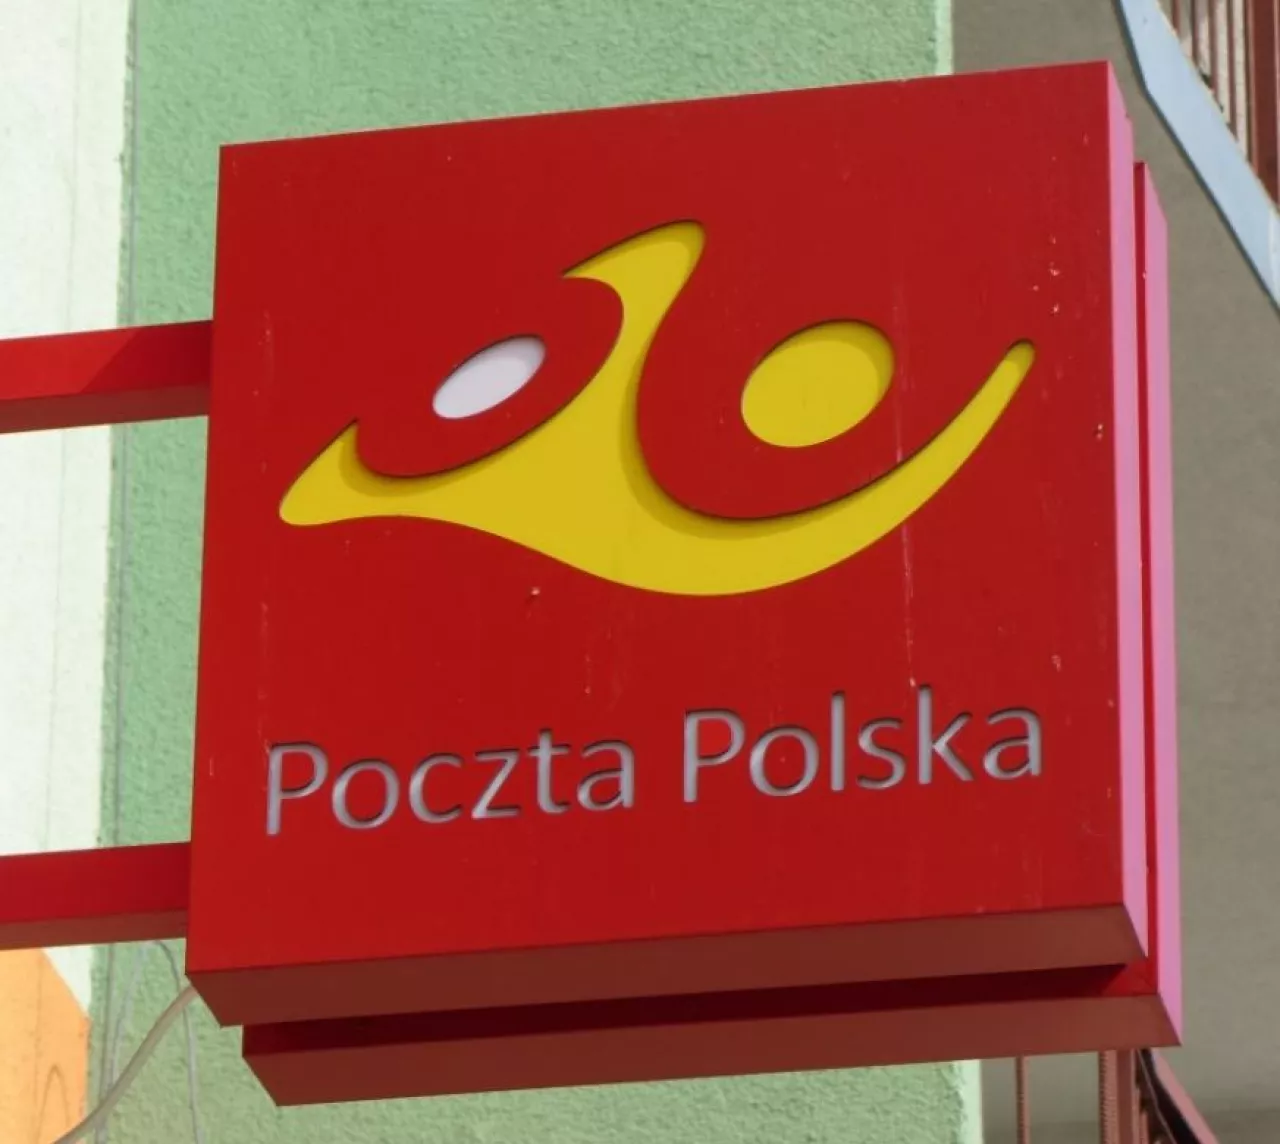 Poczta Polska chce w 2018 r. osiągnąć 500 mln zł przychodów ze sprzedaży detalicznej (fot. Konrad Kaszuba)